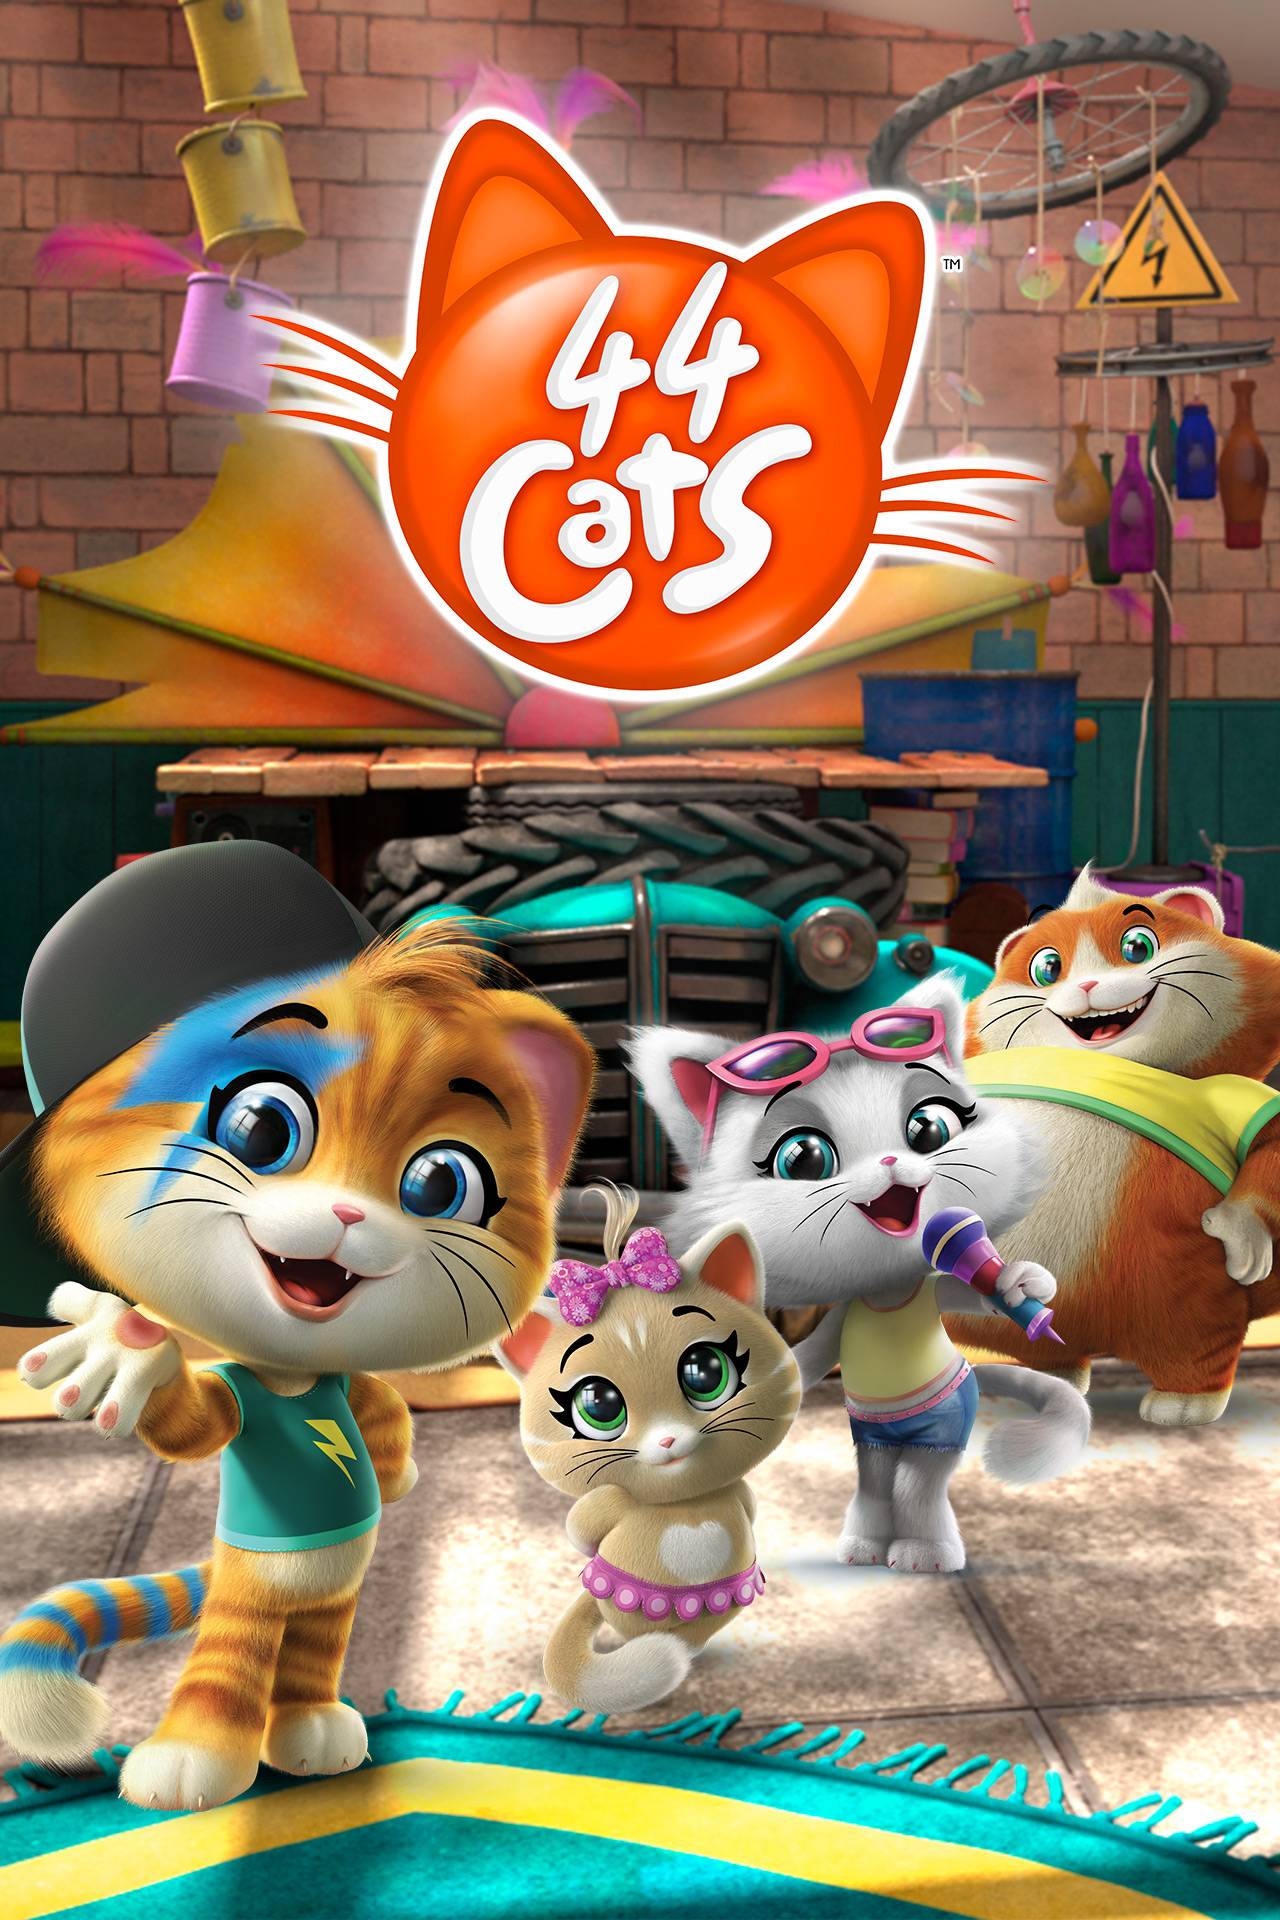 44 Cats - Season 1 - TV Series Nickelodeon